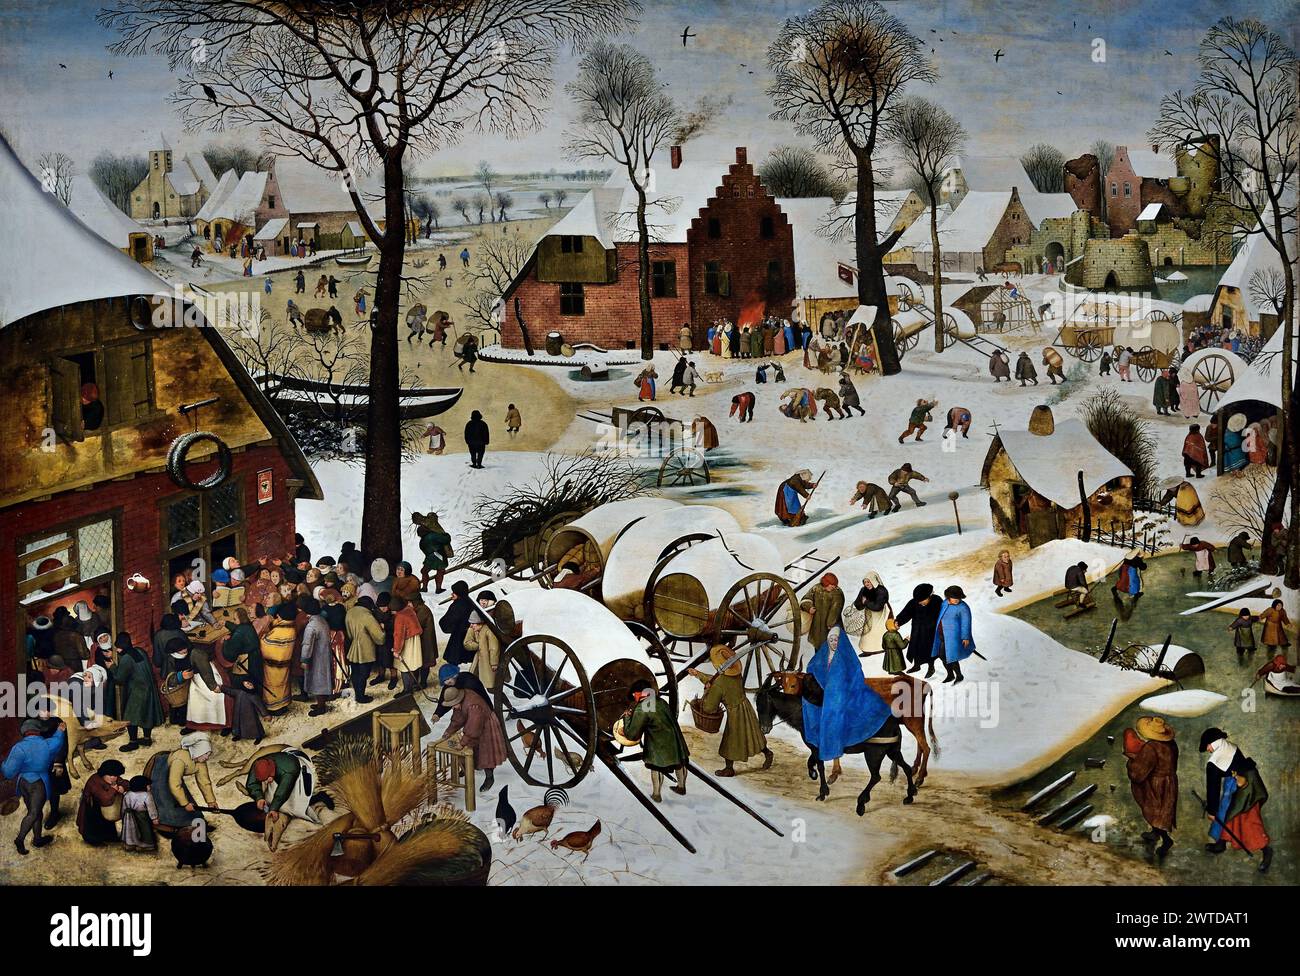 Le recensement du peuple à Bethléem par Pieter Brueghel le jeune 1564-1637, la famille Brueghel ( Bruegel ou Breughel ), peintres flamands XVIe - XVIIe siècle, belge, Belgique Banque D'Images